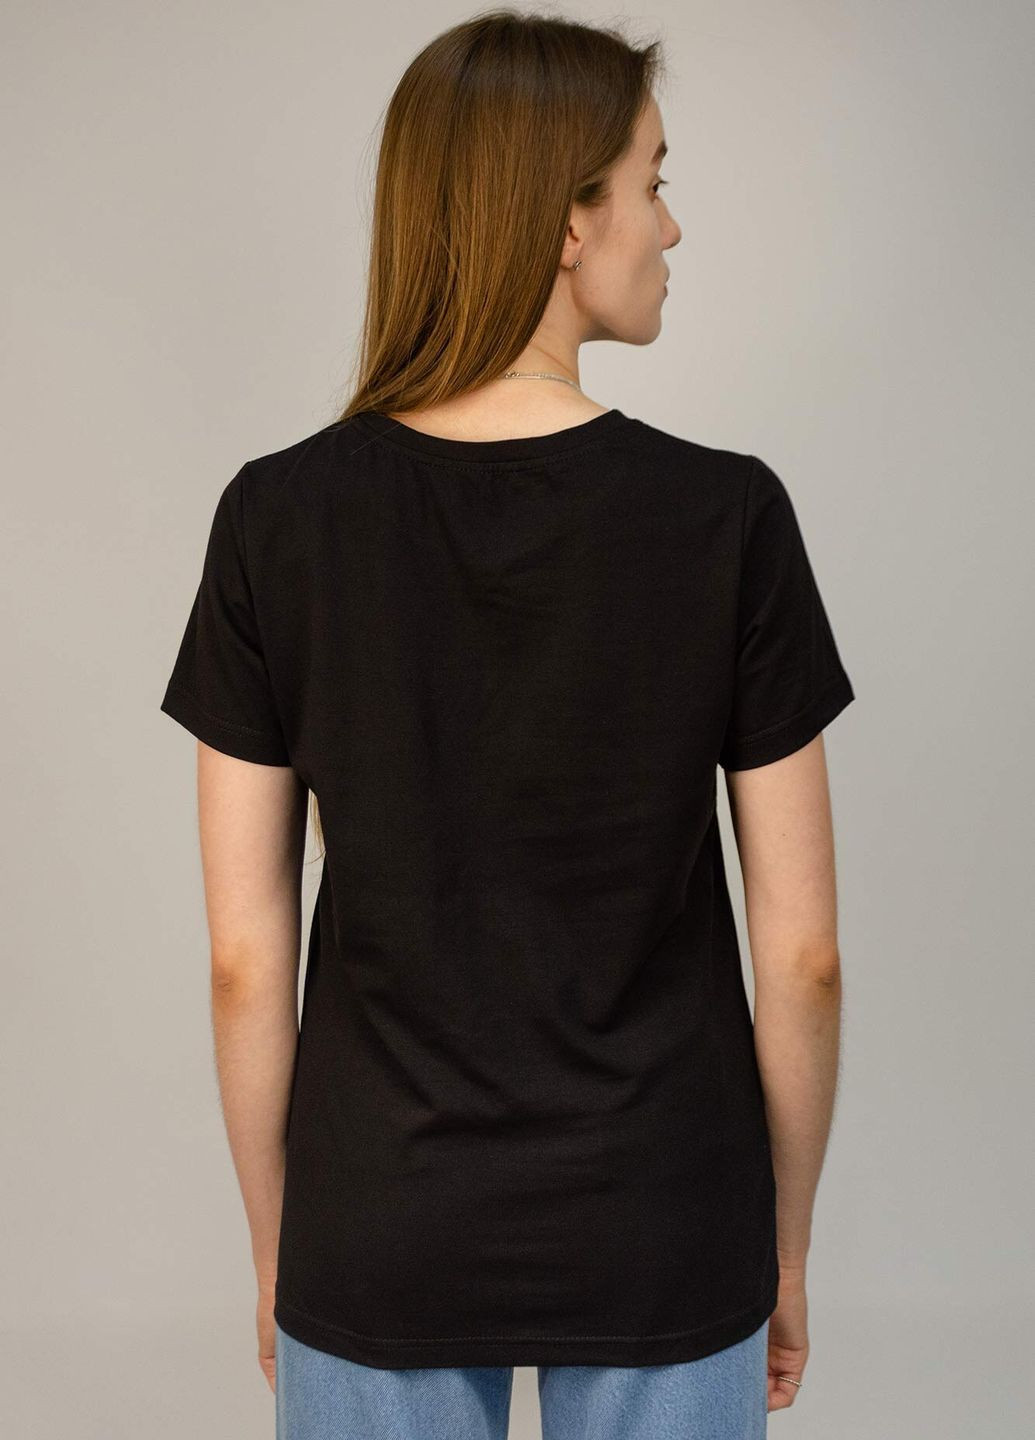 Черная летняя футболка женская base с коротким рукавом Hot